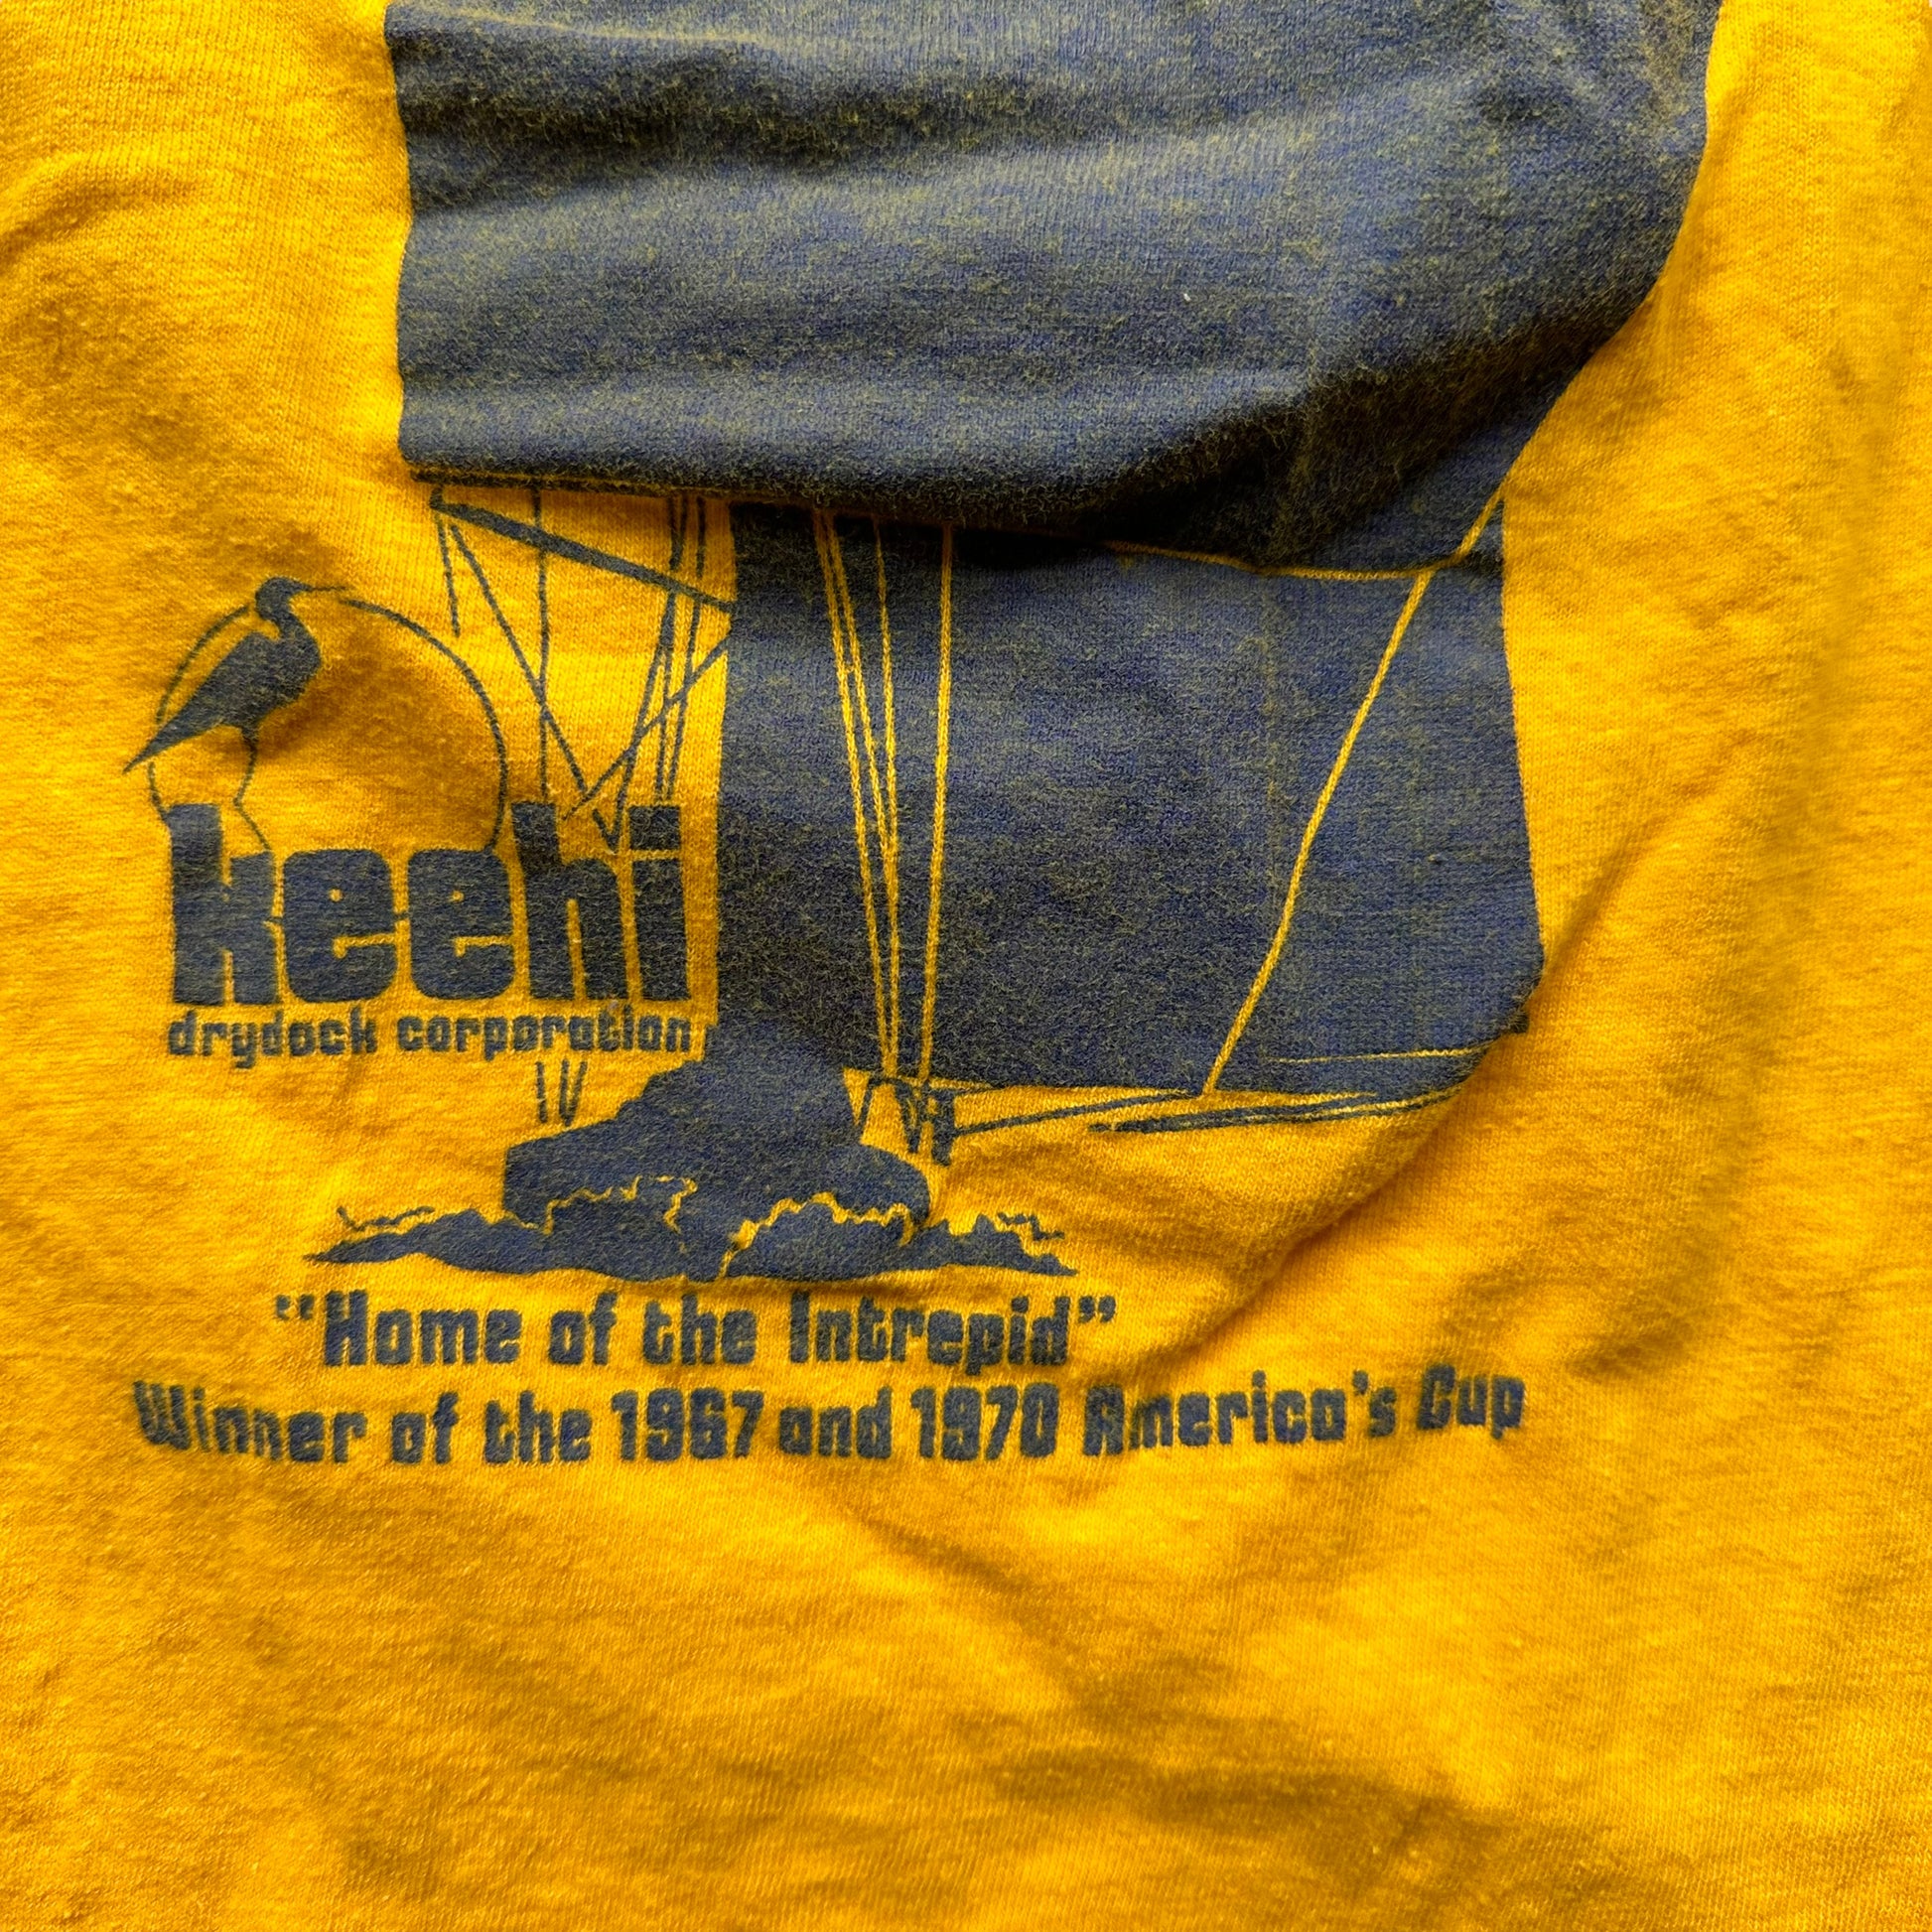 Lower Text on Vintage Keehi Drydock Corporation Pocket Tee SZ M | Vintage Sailing T-Shirts Seattle | Barn Owl Vintage Tees Seattle